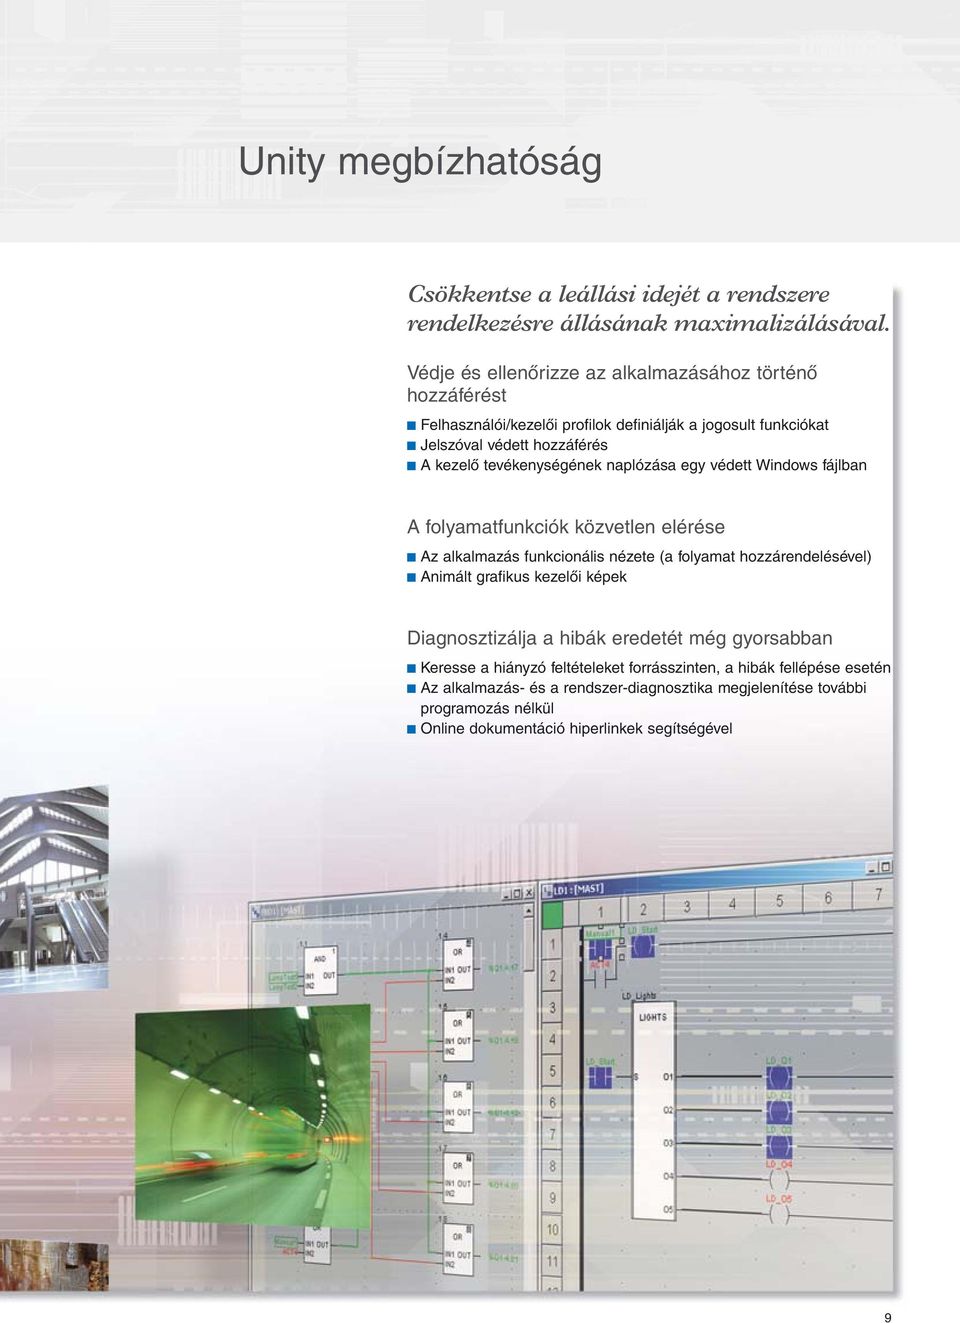 tevékenységének naplózása egy védett Windows fájlban A folyamatfunkciók közvetlen elérése c Az alkalmazás funkcionális nézete (a folyamat hozzárendelésével) c Animált grafikus